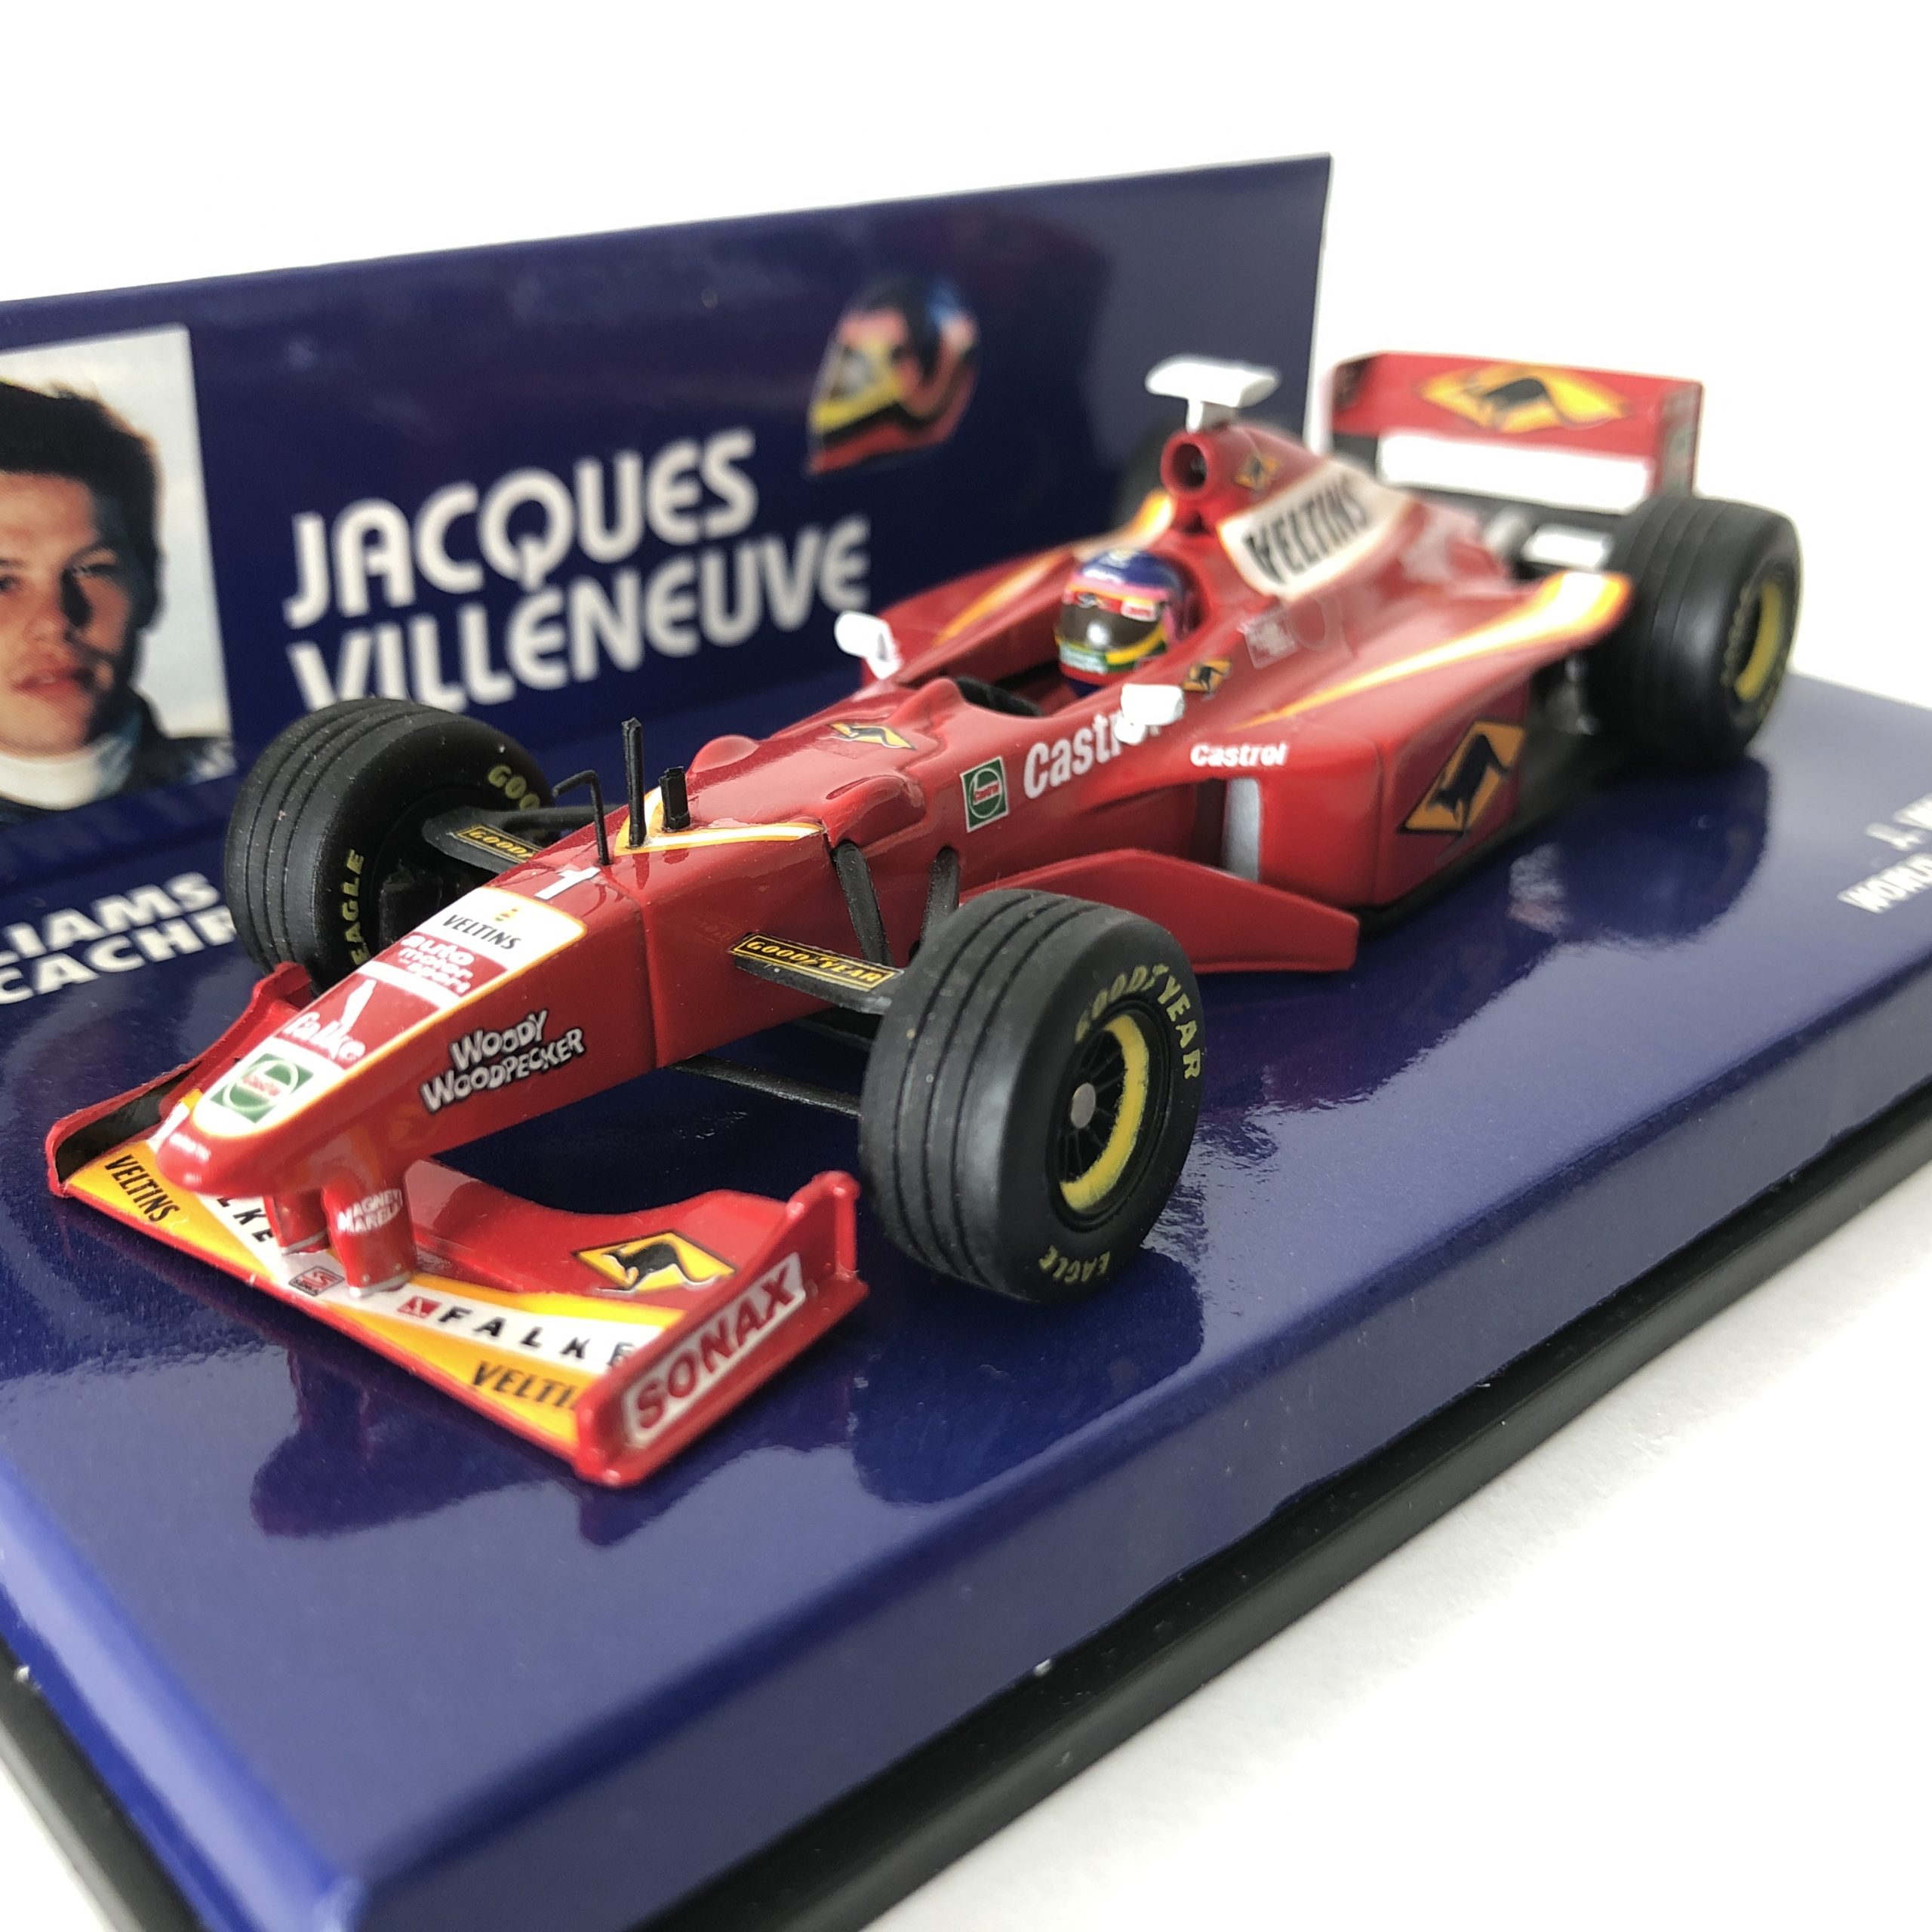 Jacques Villeneuve | Williams Renault FW19 | Minichamps Diecast 1:43  Minichamps